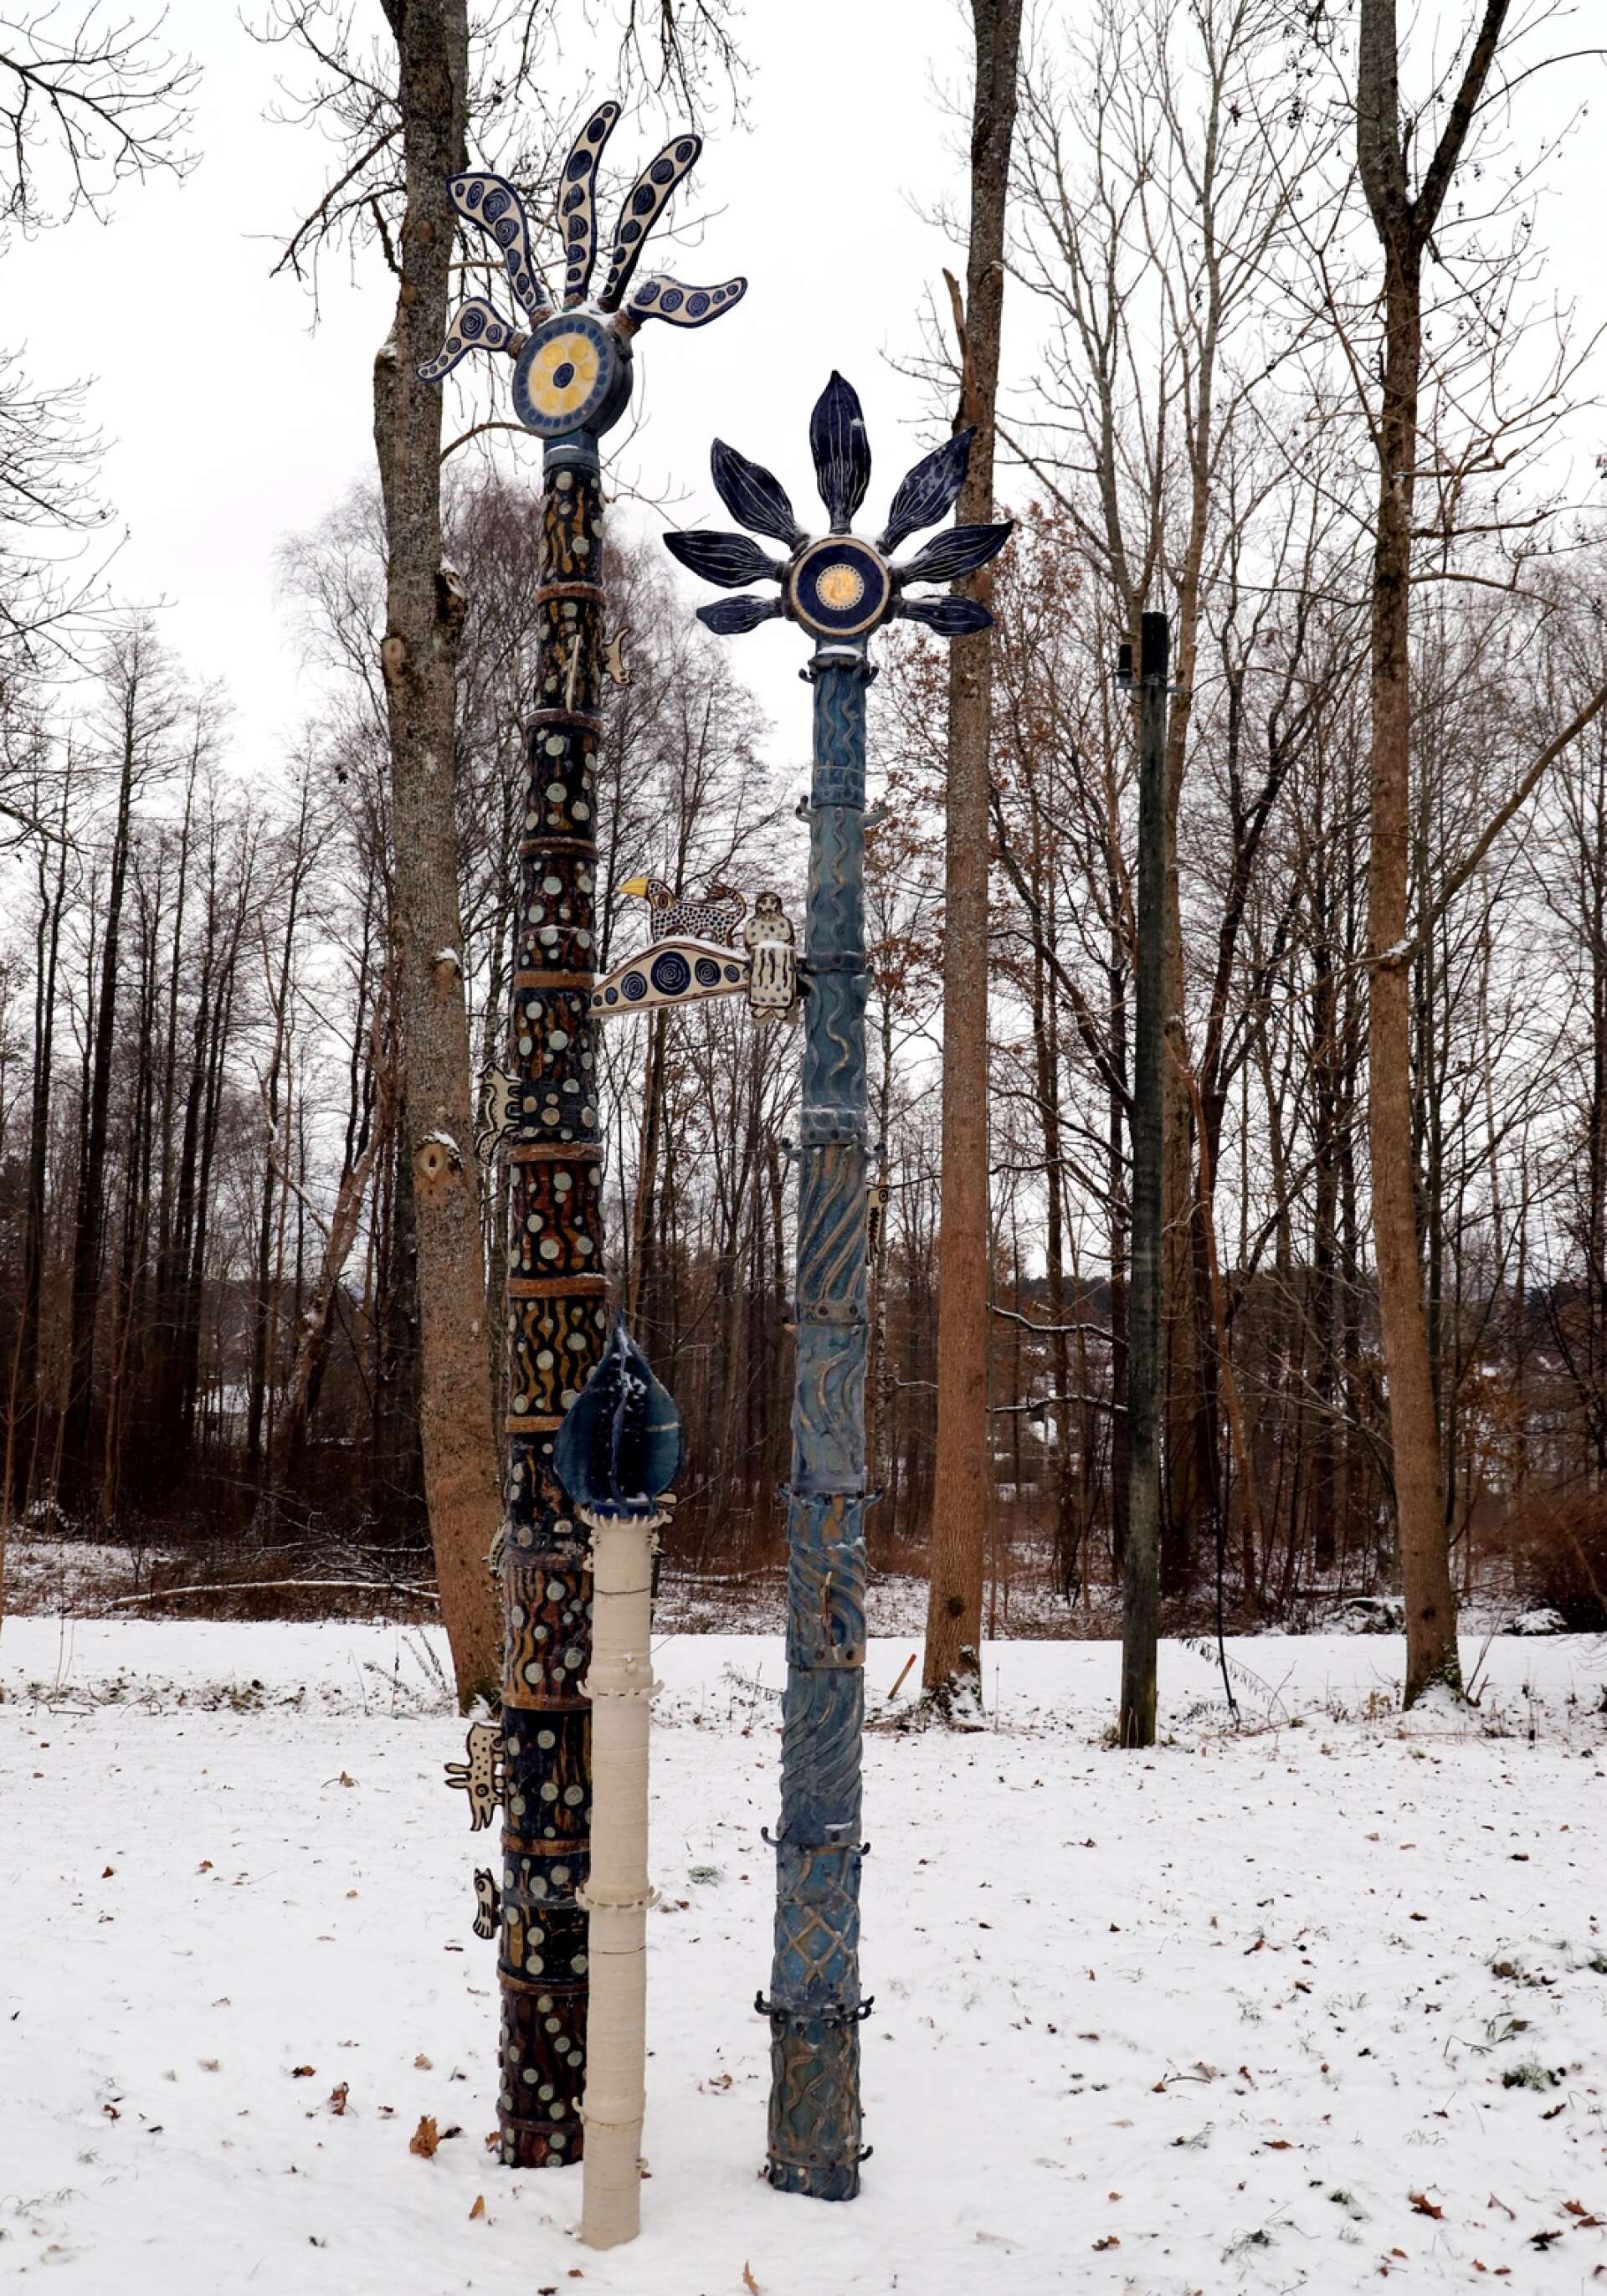 Rex Stuart-Becks keramikskulptur består av tre träd, som nu får en ny plats att rota sig på.